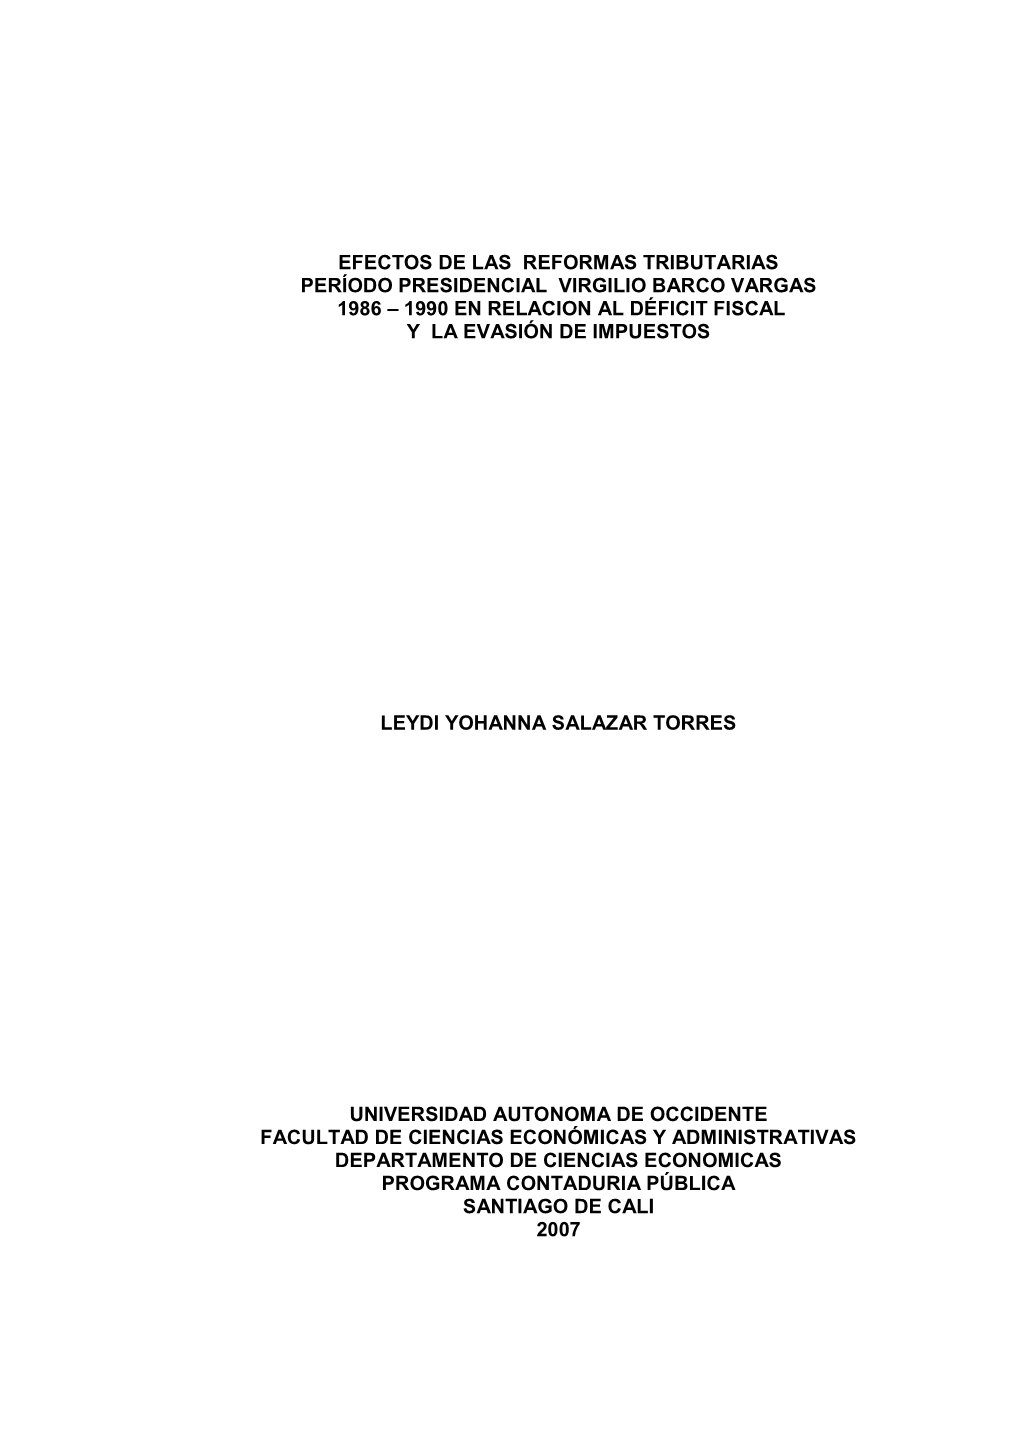 Efectos De Las Reformas Tributarias Período Presidencial Virgilio Barco Vargas 1986 – 1990 En Relacion Al Déficit Fiscal Y La Evasión De Impuestos